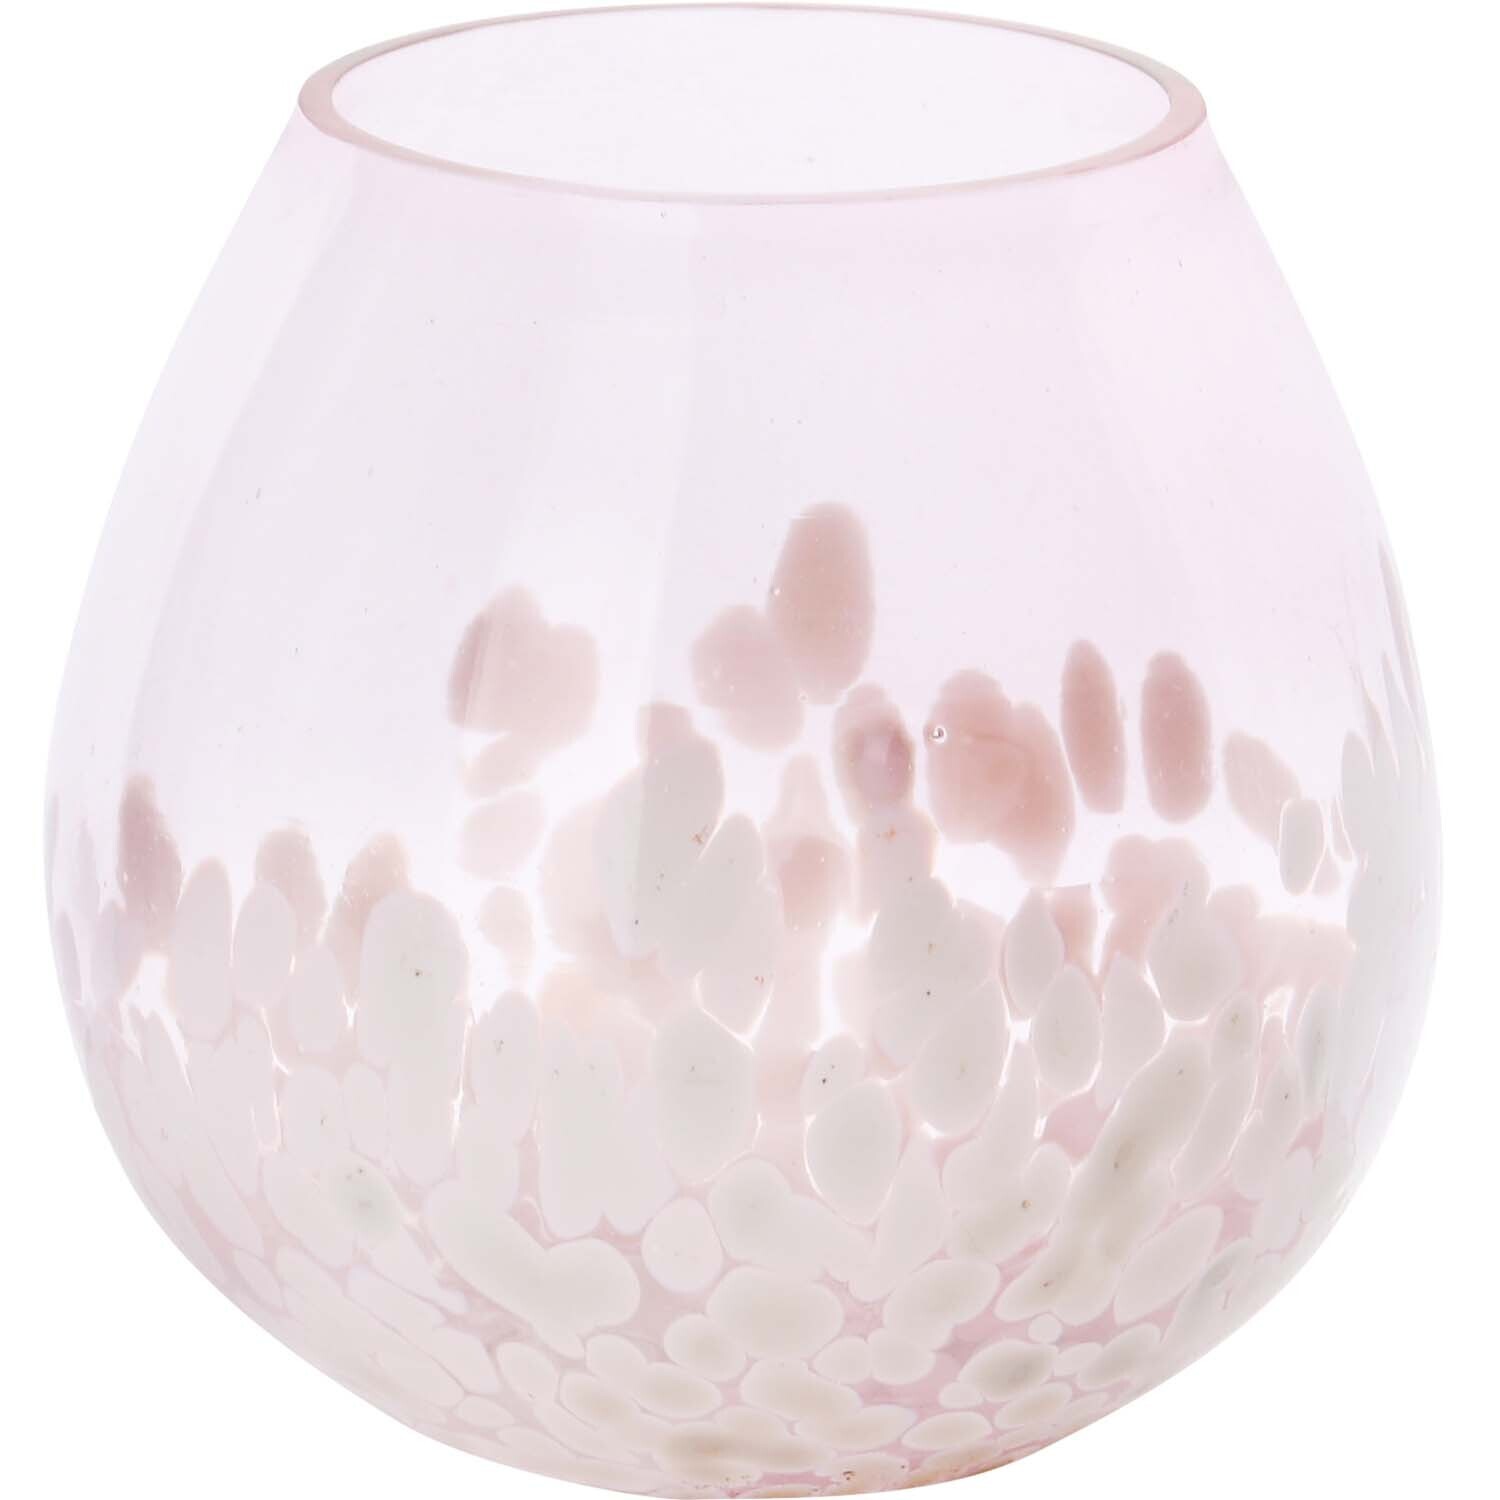 Theelicht roze met spikkels glas